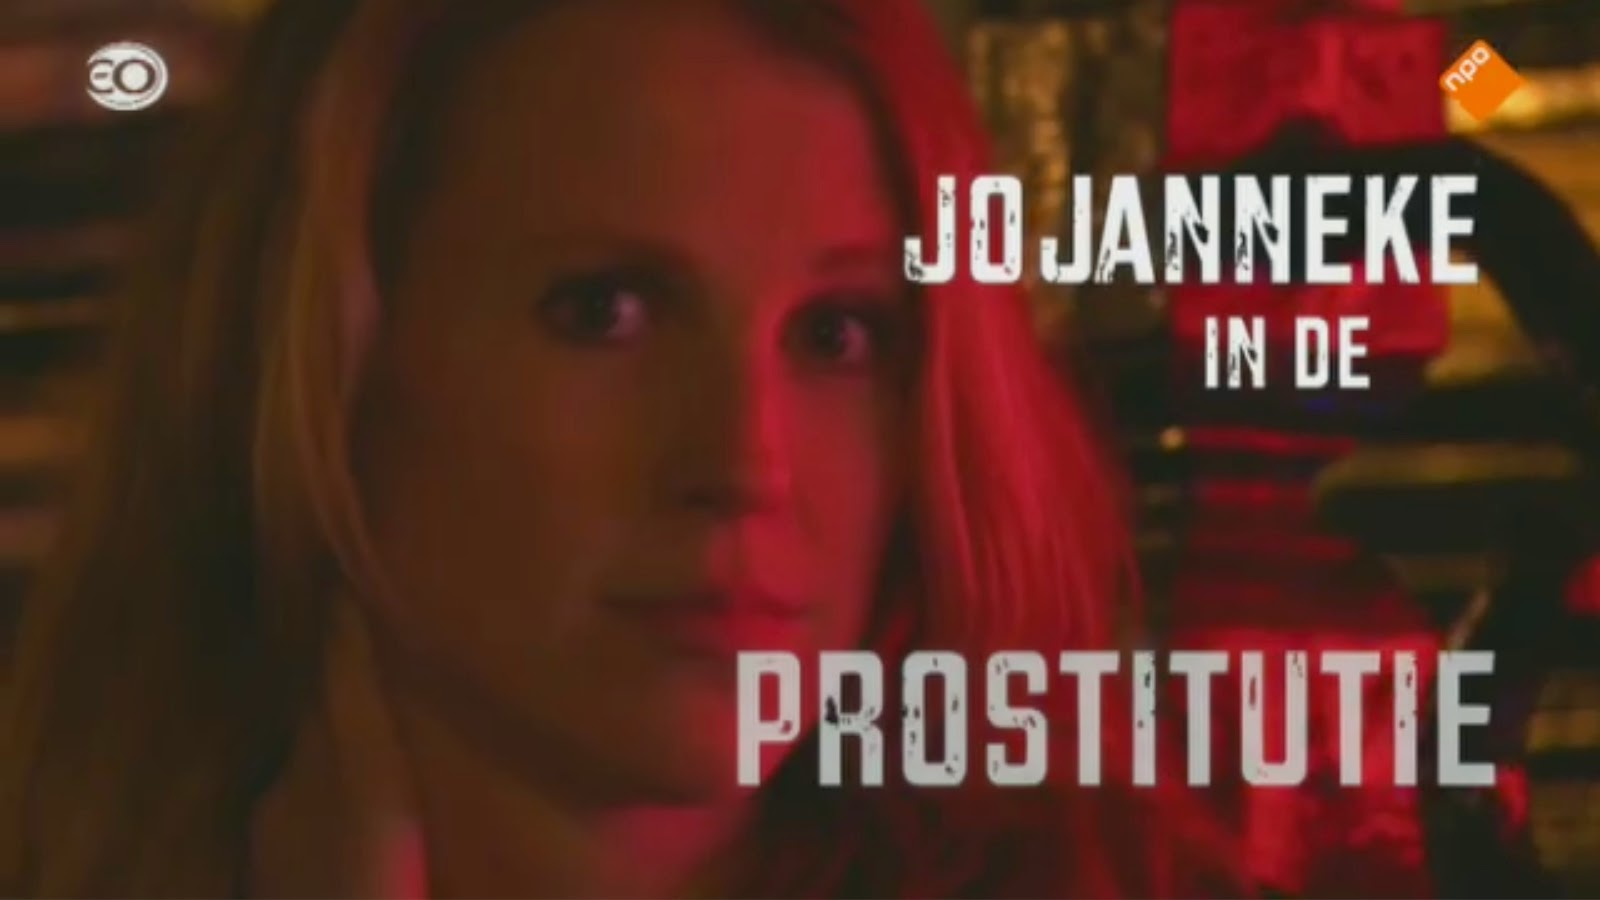 prostituees over klanten